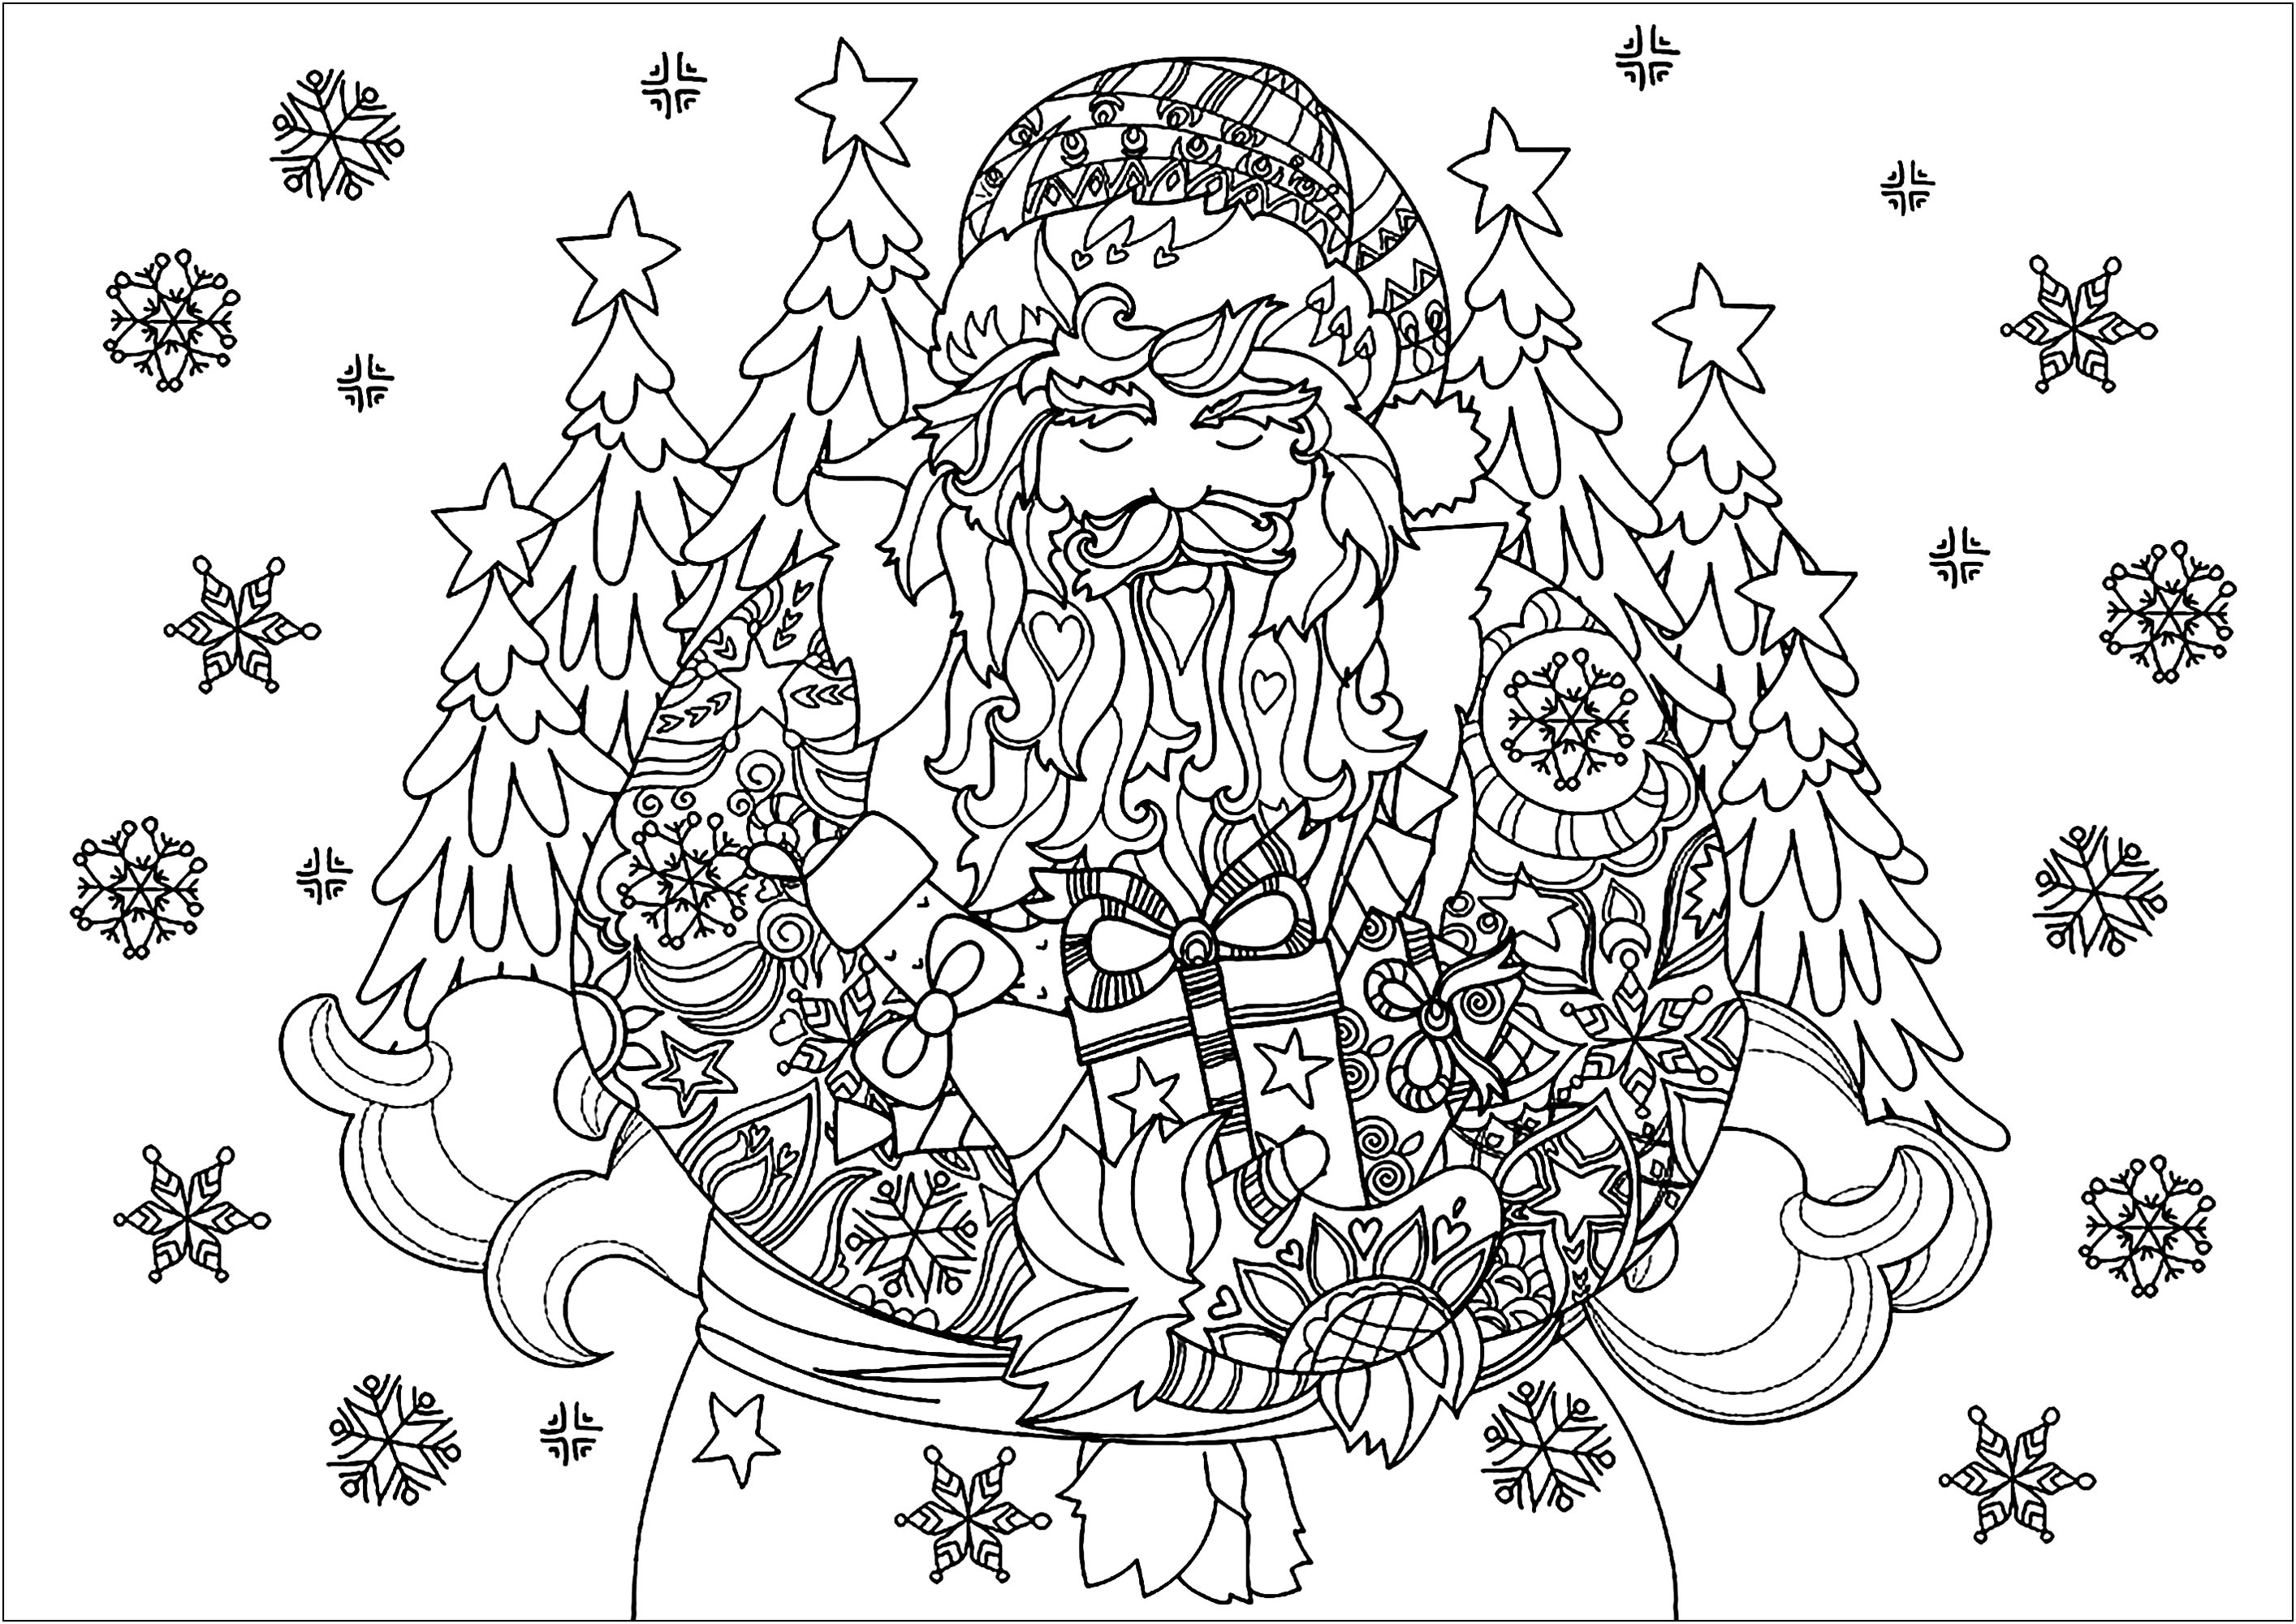 Niedliche Weihnachtsmann Zeichnung, mit Schneeflocken um ihn herum, Künstler : Ирина Язева   Quelle : 123rf